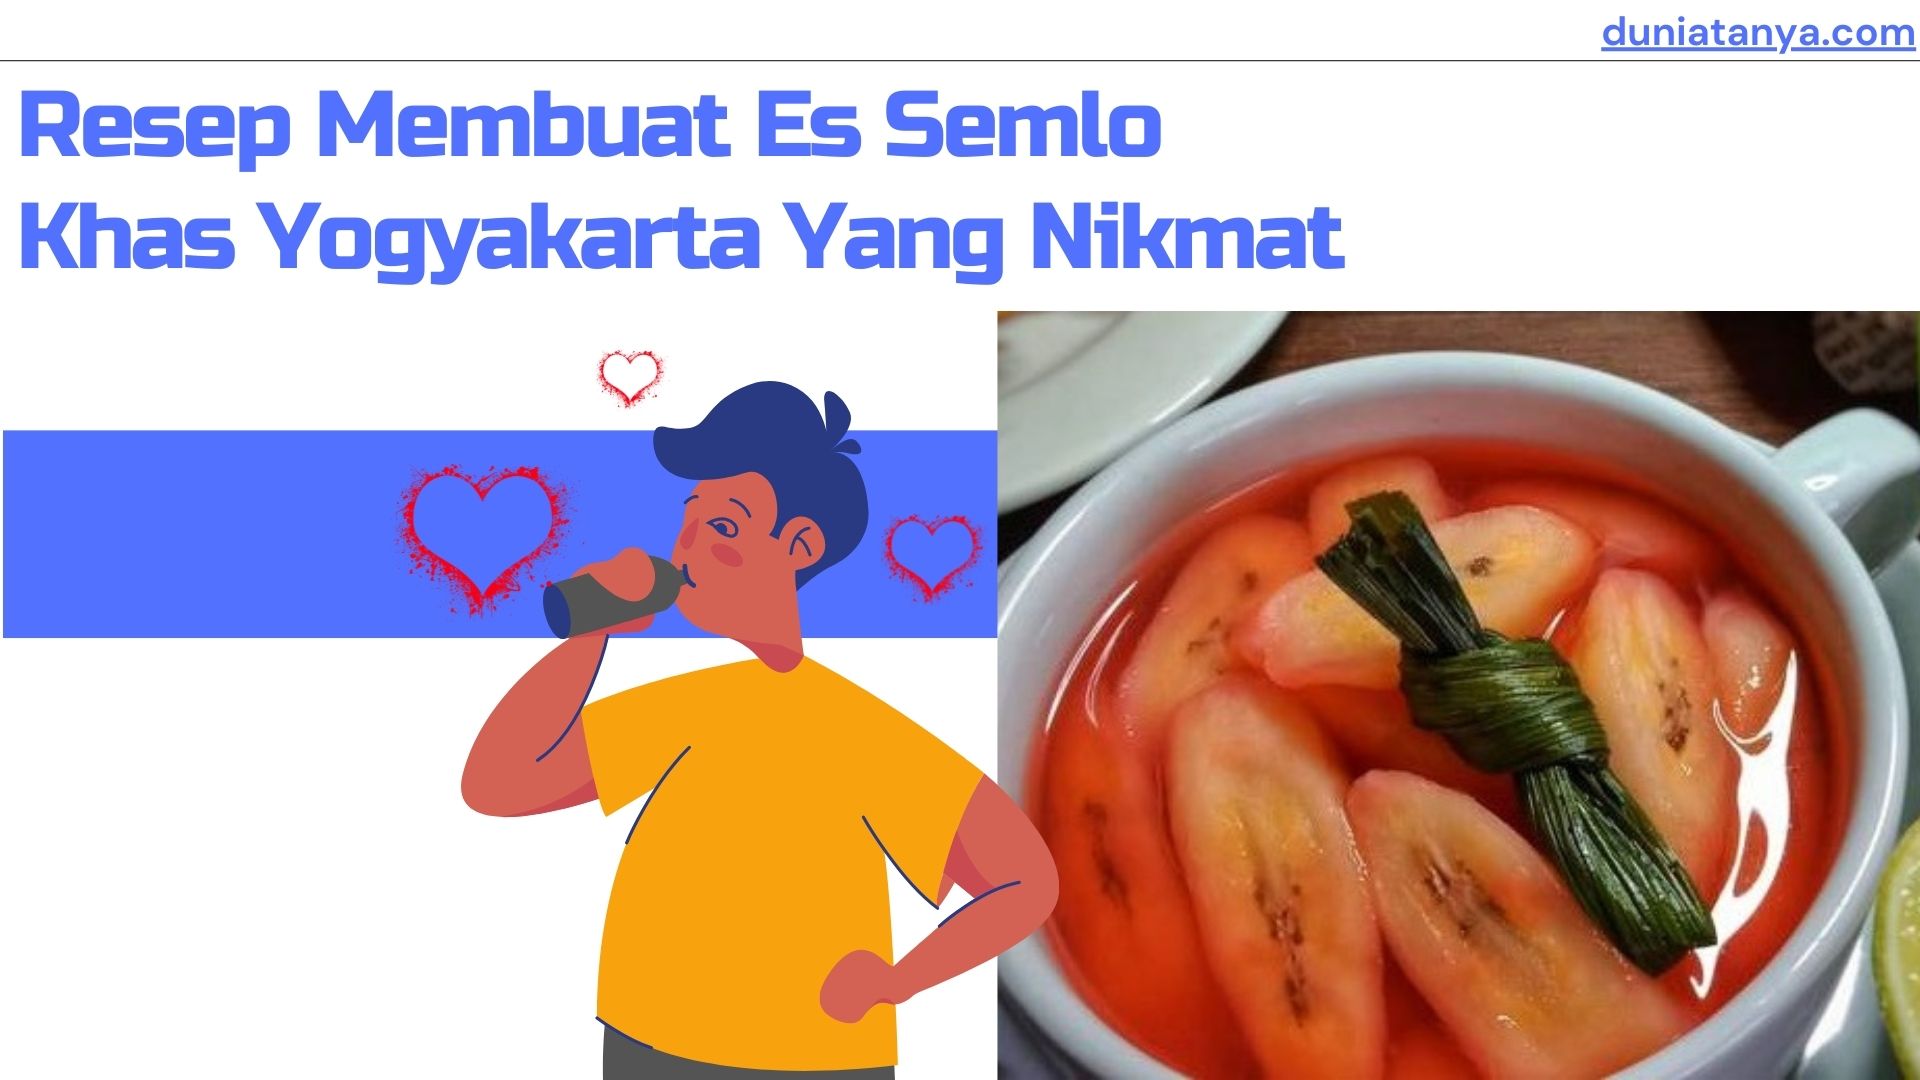 You are currently viewing Resep Membuat Es Semlo Khas Yogyakarta Yang Nikmat